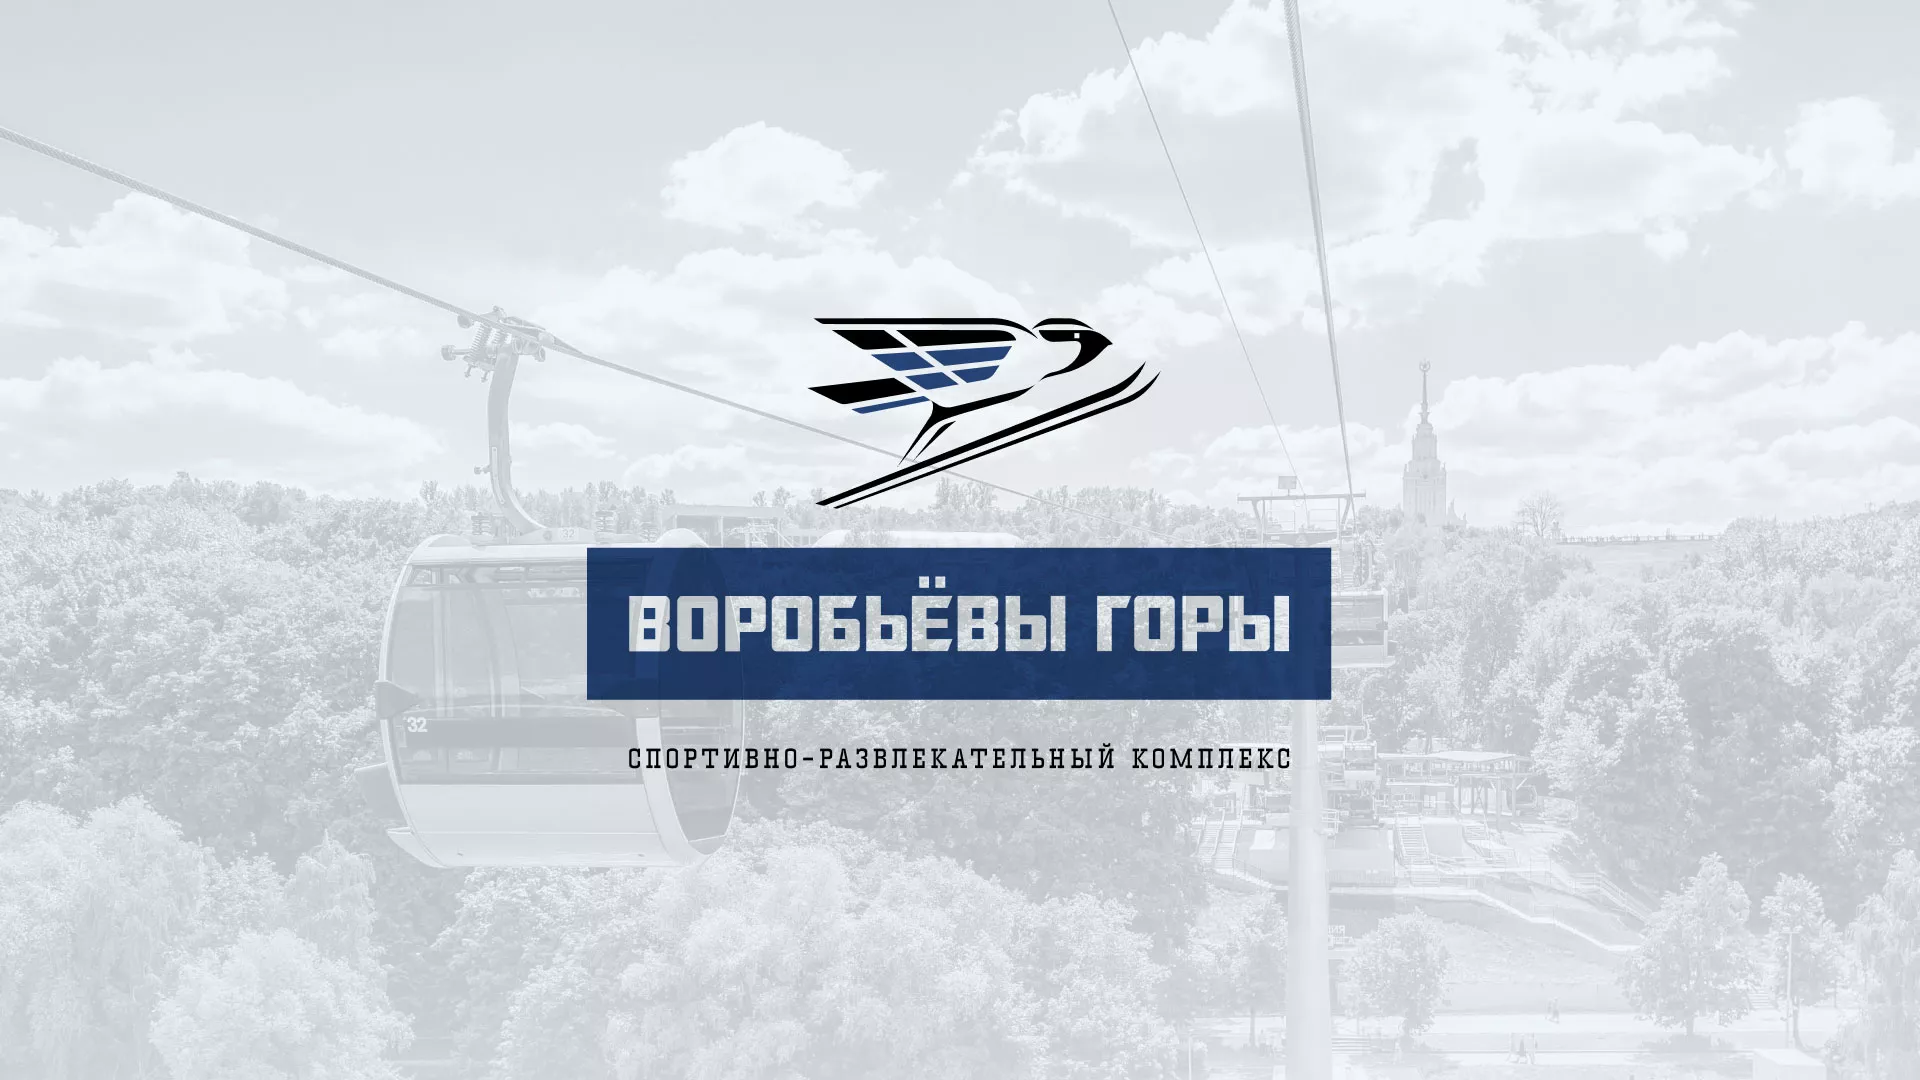 Разработка сайта в Фурманове для спортивно-развлекательного комплекса «Воробьёвы горы»